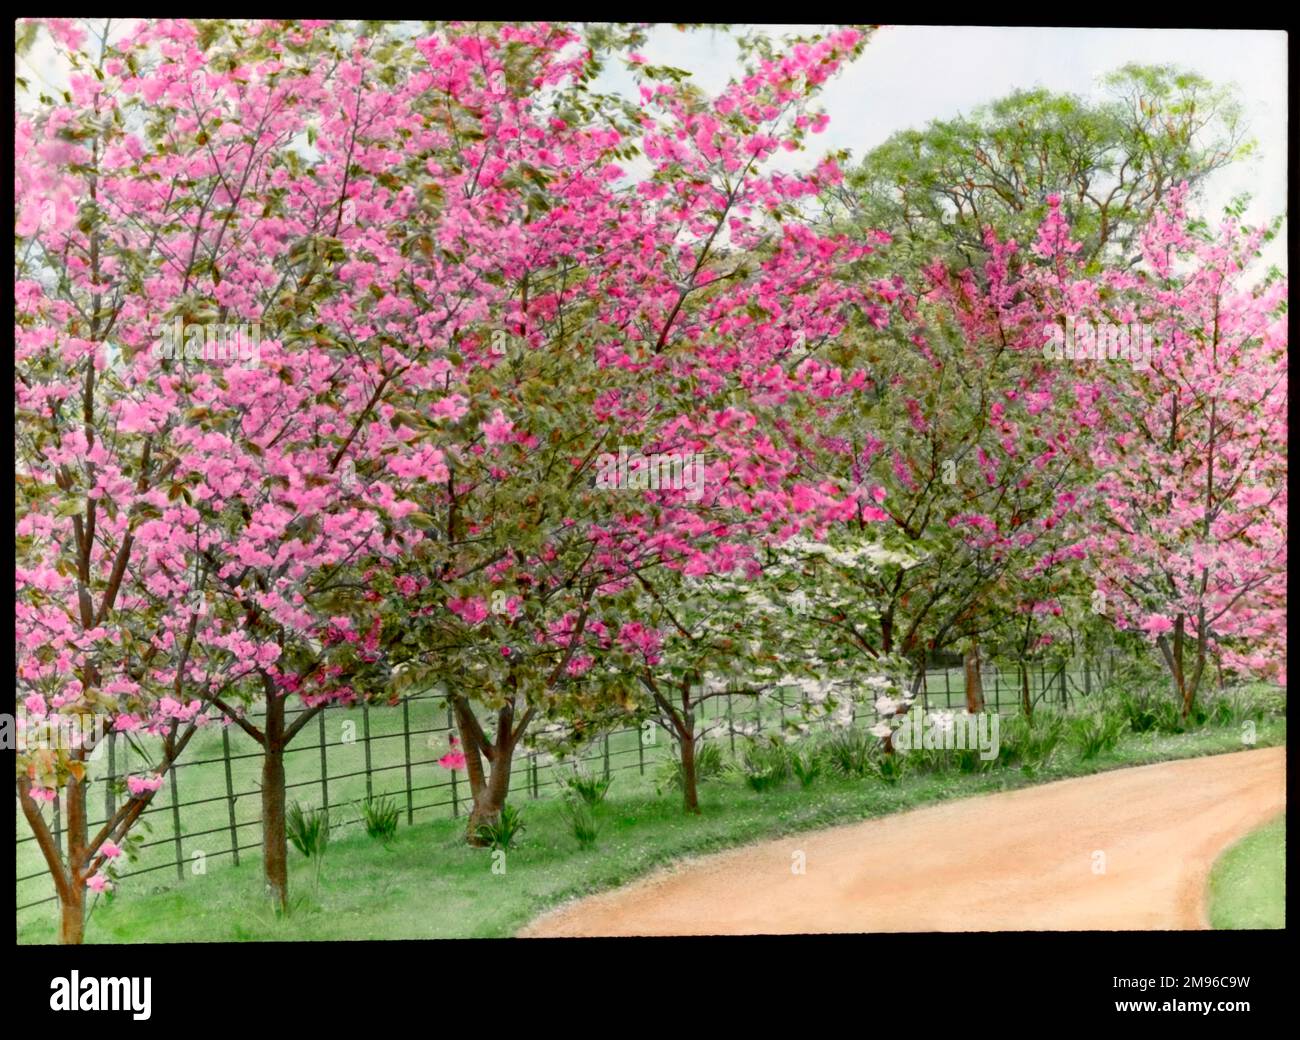 Prunus (cerisier fleuri), plusieurs arbres plantés le long d'un sentier, chargé de fleurs roses dans différentes nuances. Banque D'Images